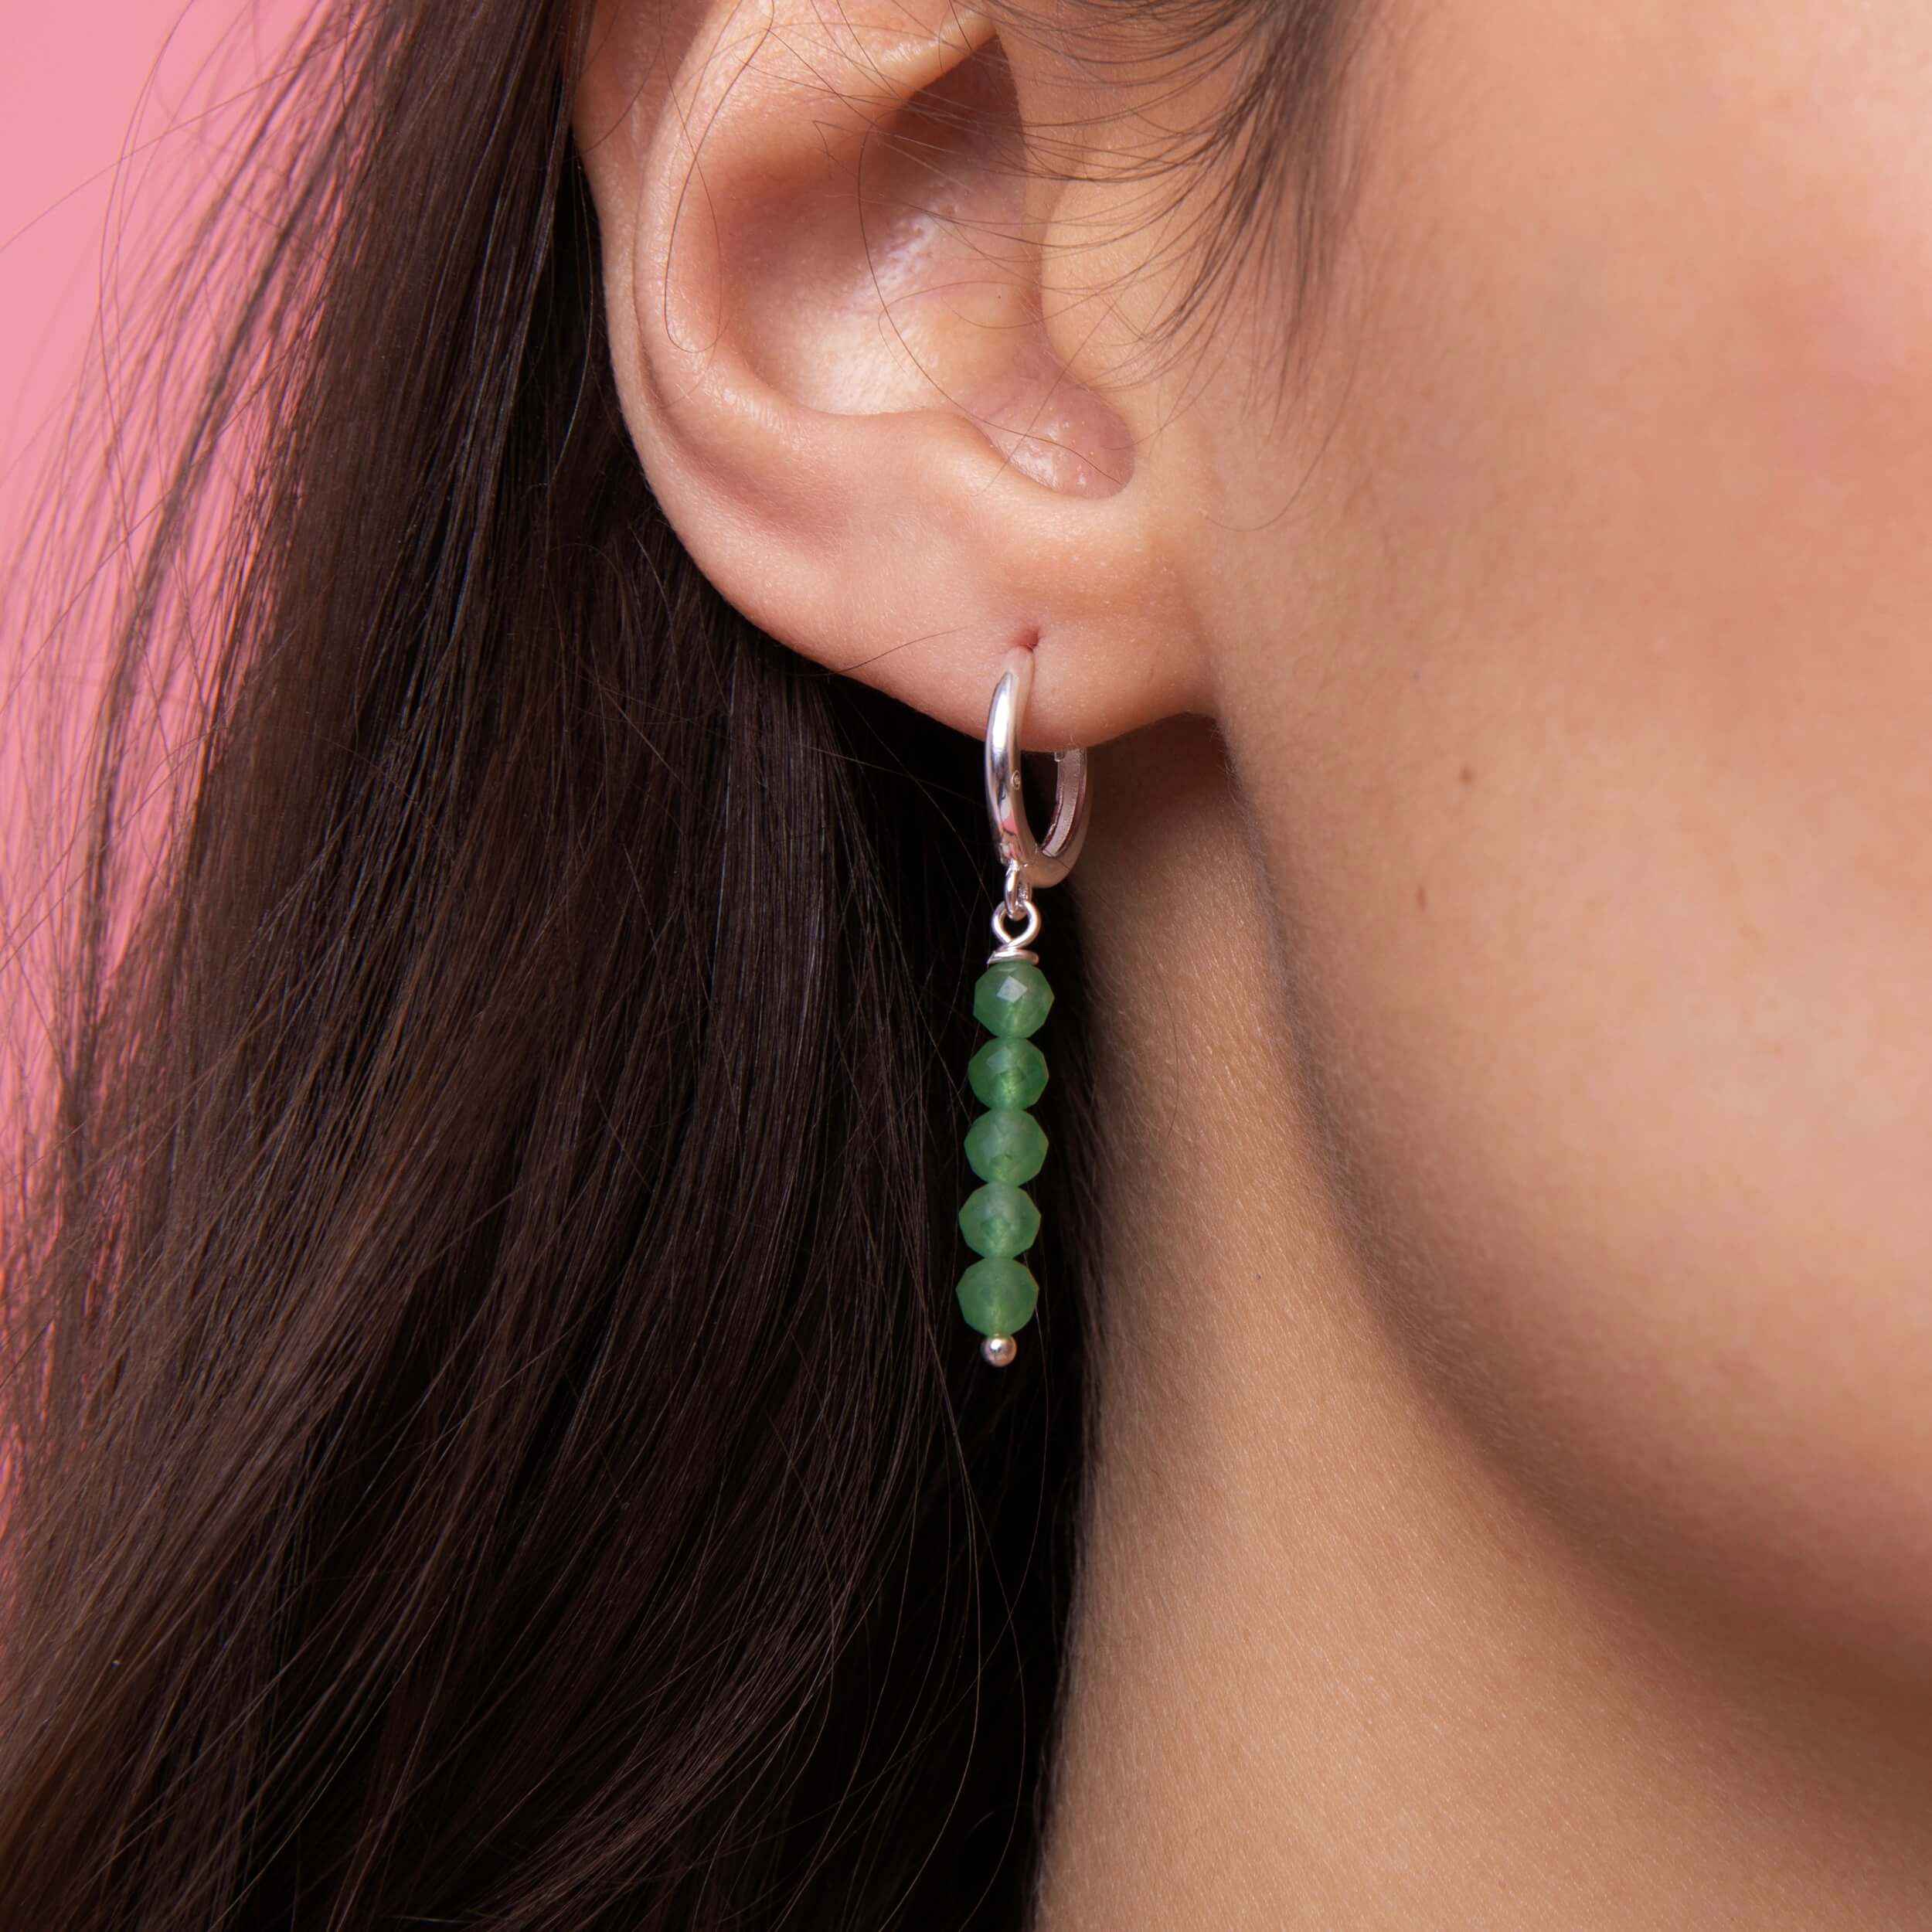 Damen Ohrringe mit geschliffenen Aventurin Steinen und 925 Sterling Silber. Die meergrünen Ohrhänger sind bezaubernd. Die silbernen verschliessbaren Kreolen eignen sich für jeden Event.